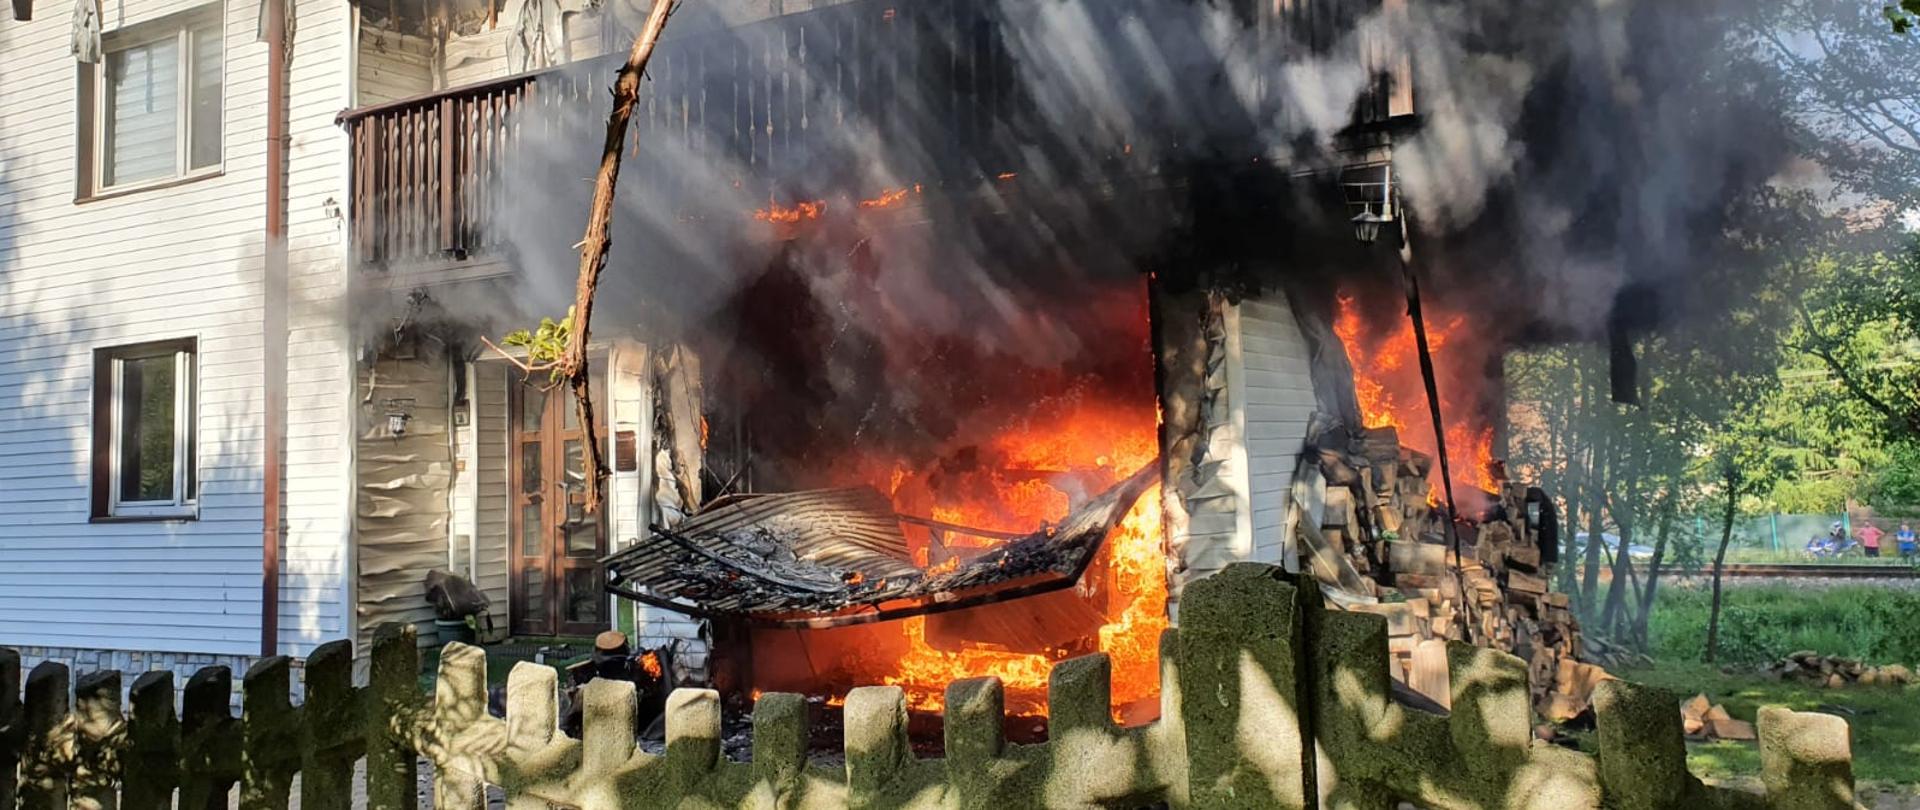 Pożar budynku mieszkalnego w Żywcu - płomienie i ogień wydostają się z pomieszczenia garażu. 